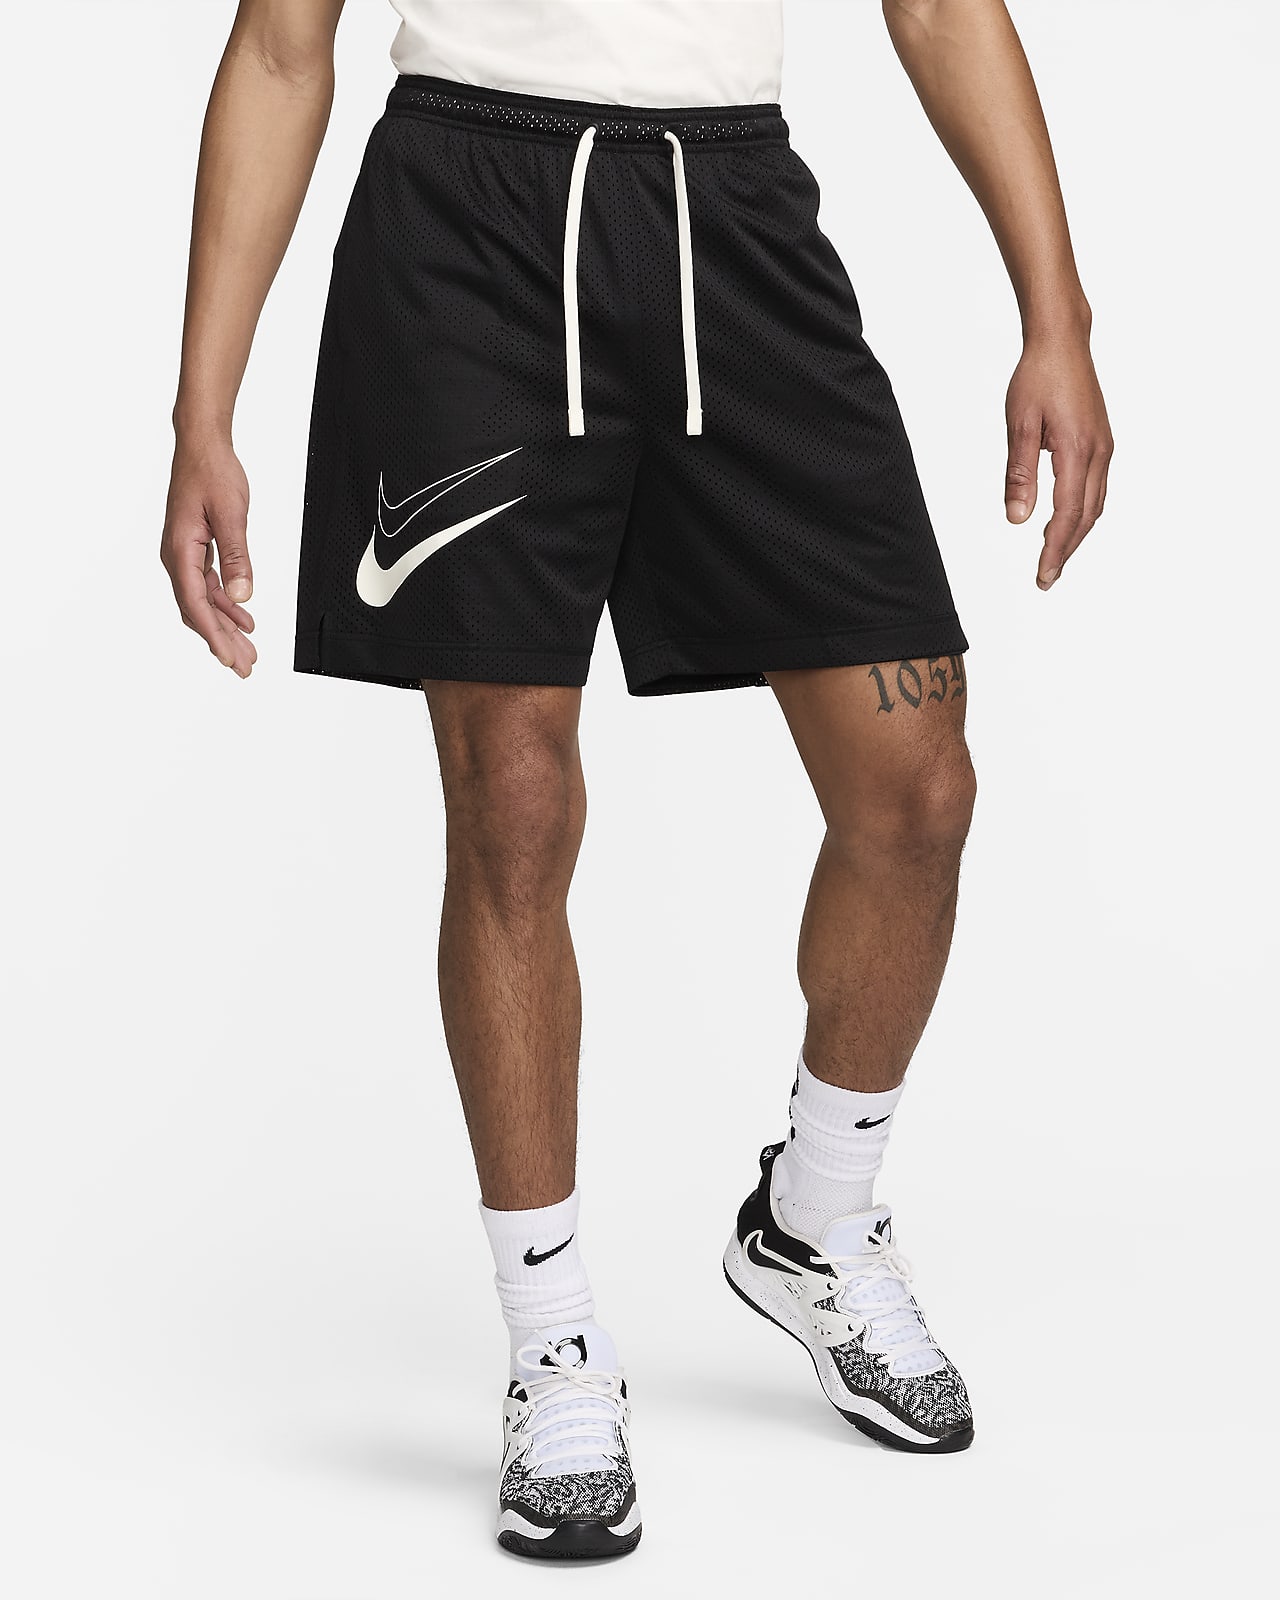 Shorts de básquetbol Dri-FIT Standard Issue Reversible para hombre KD